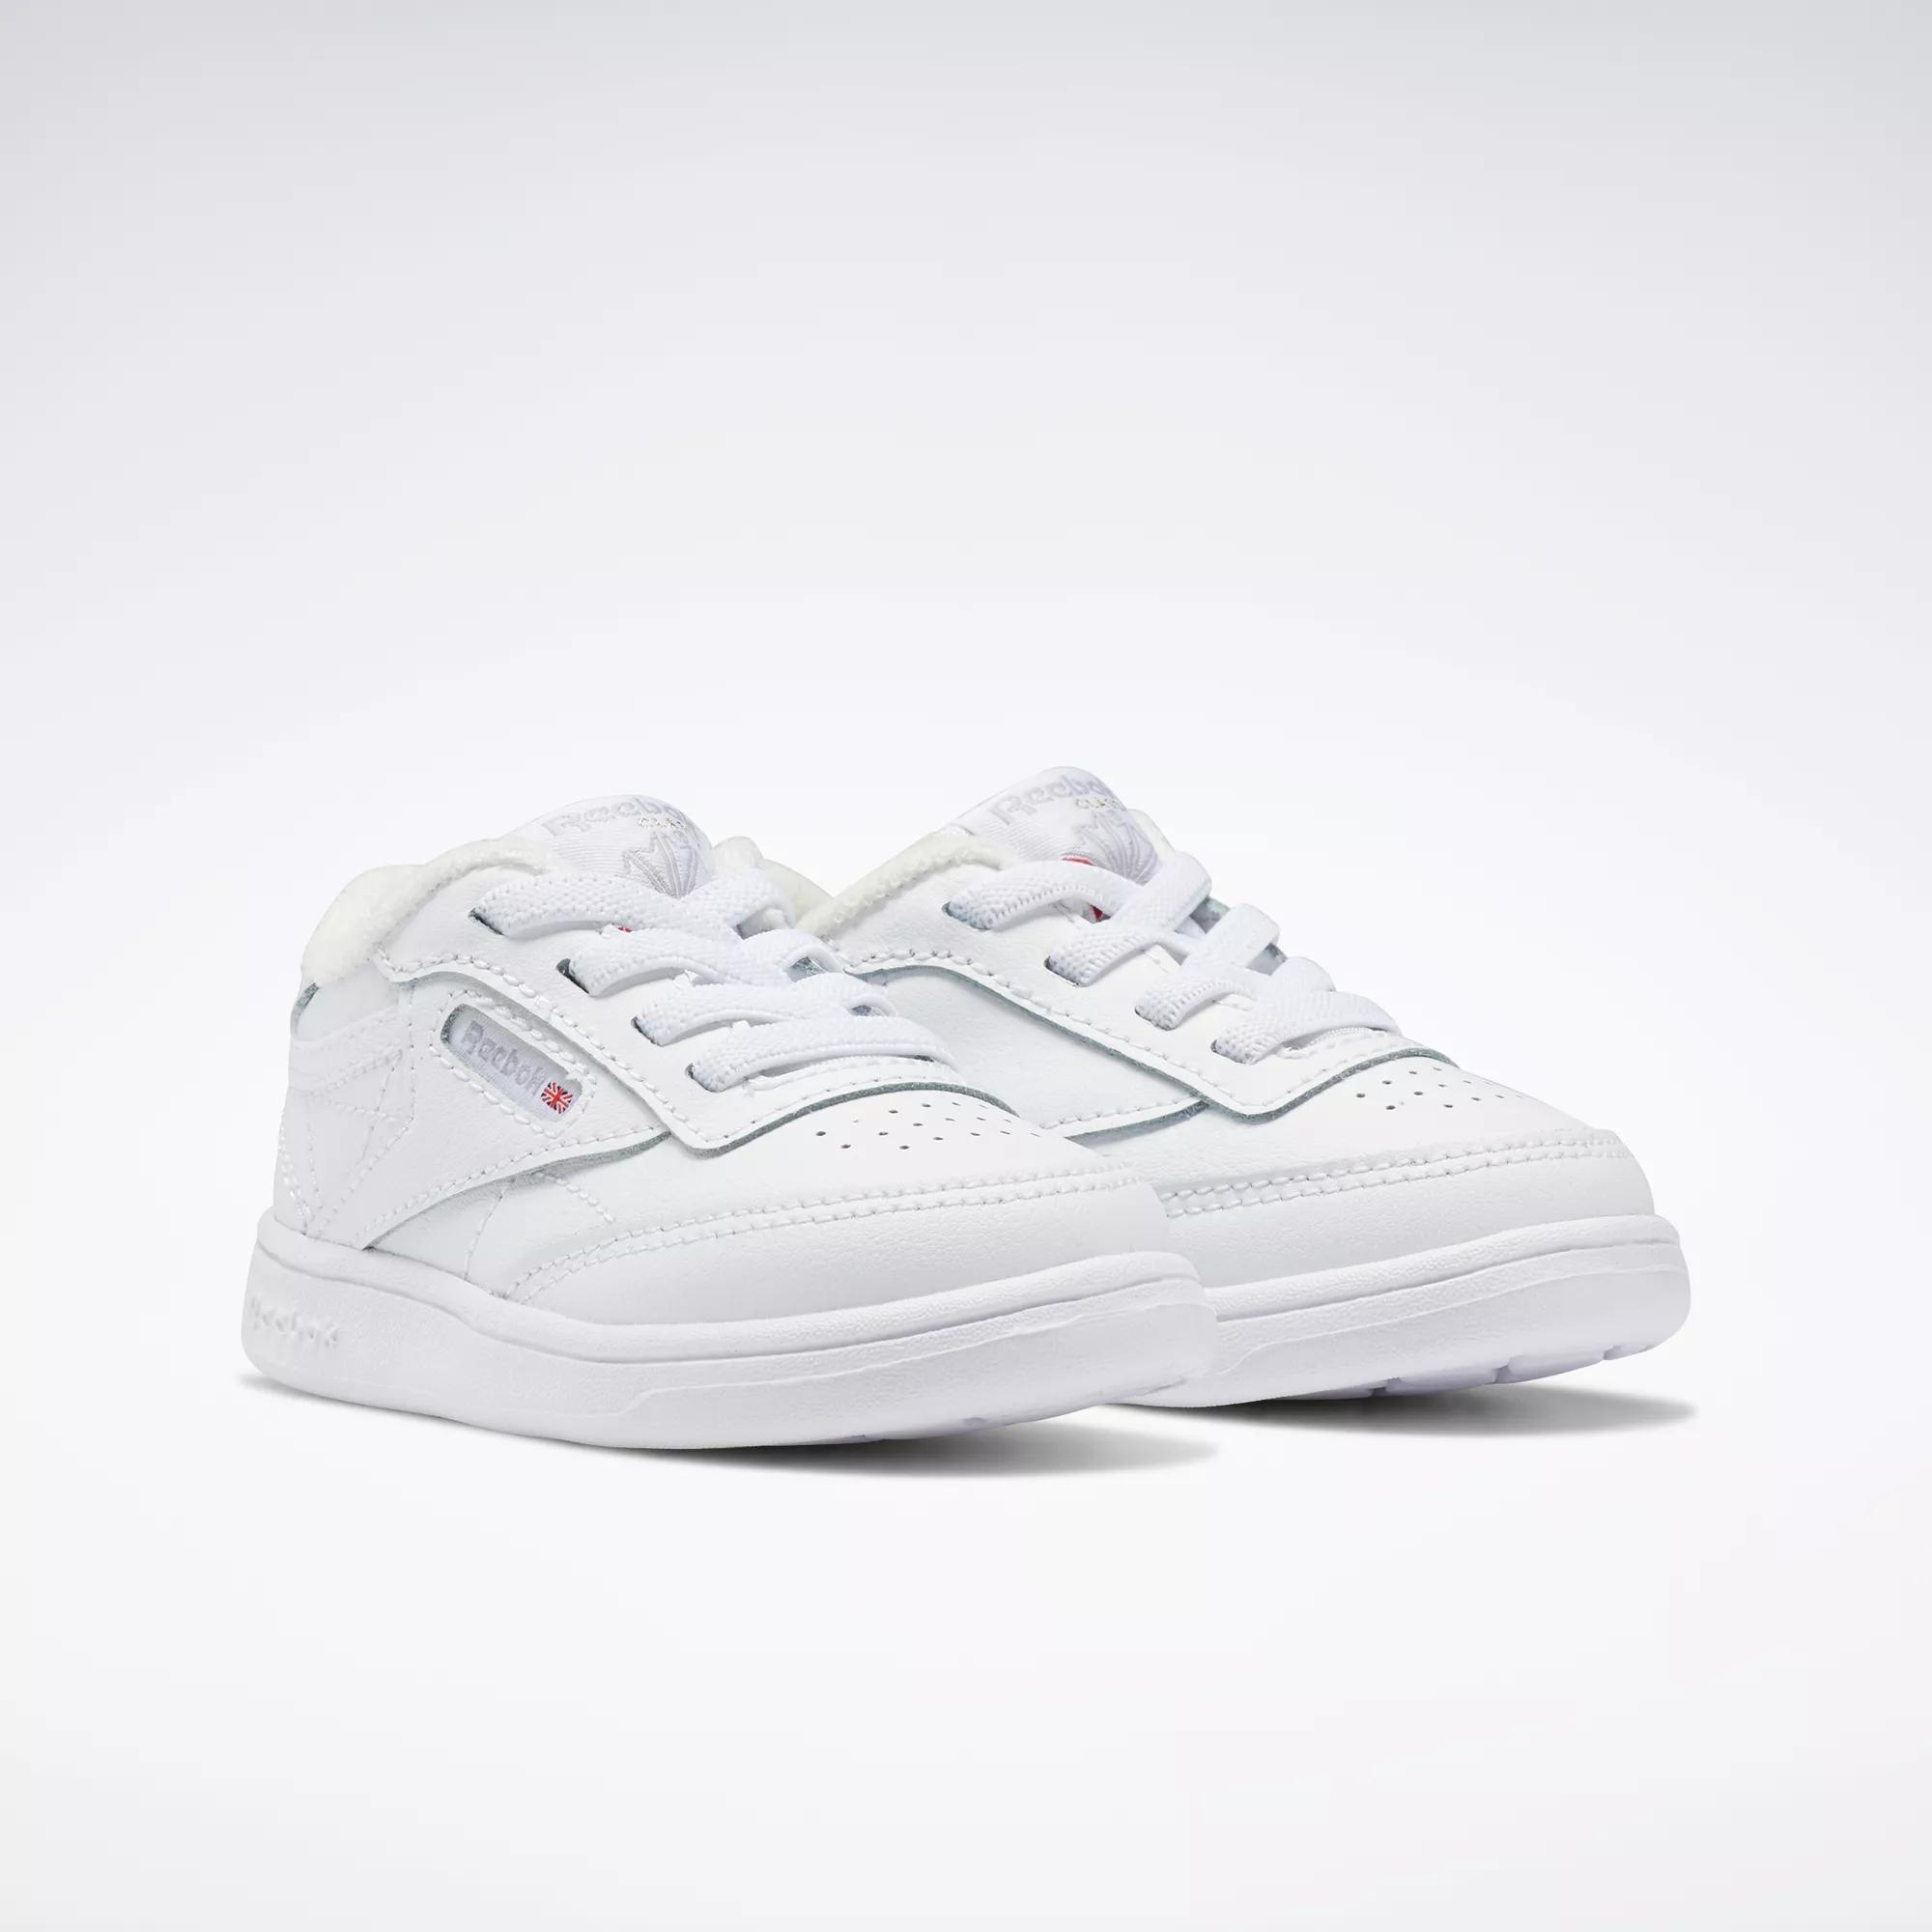 Club C Shoes - Toddler - Ftwr White / Ftwr White / Ftwr White | Reebok